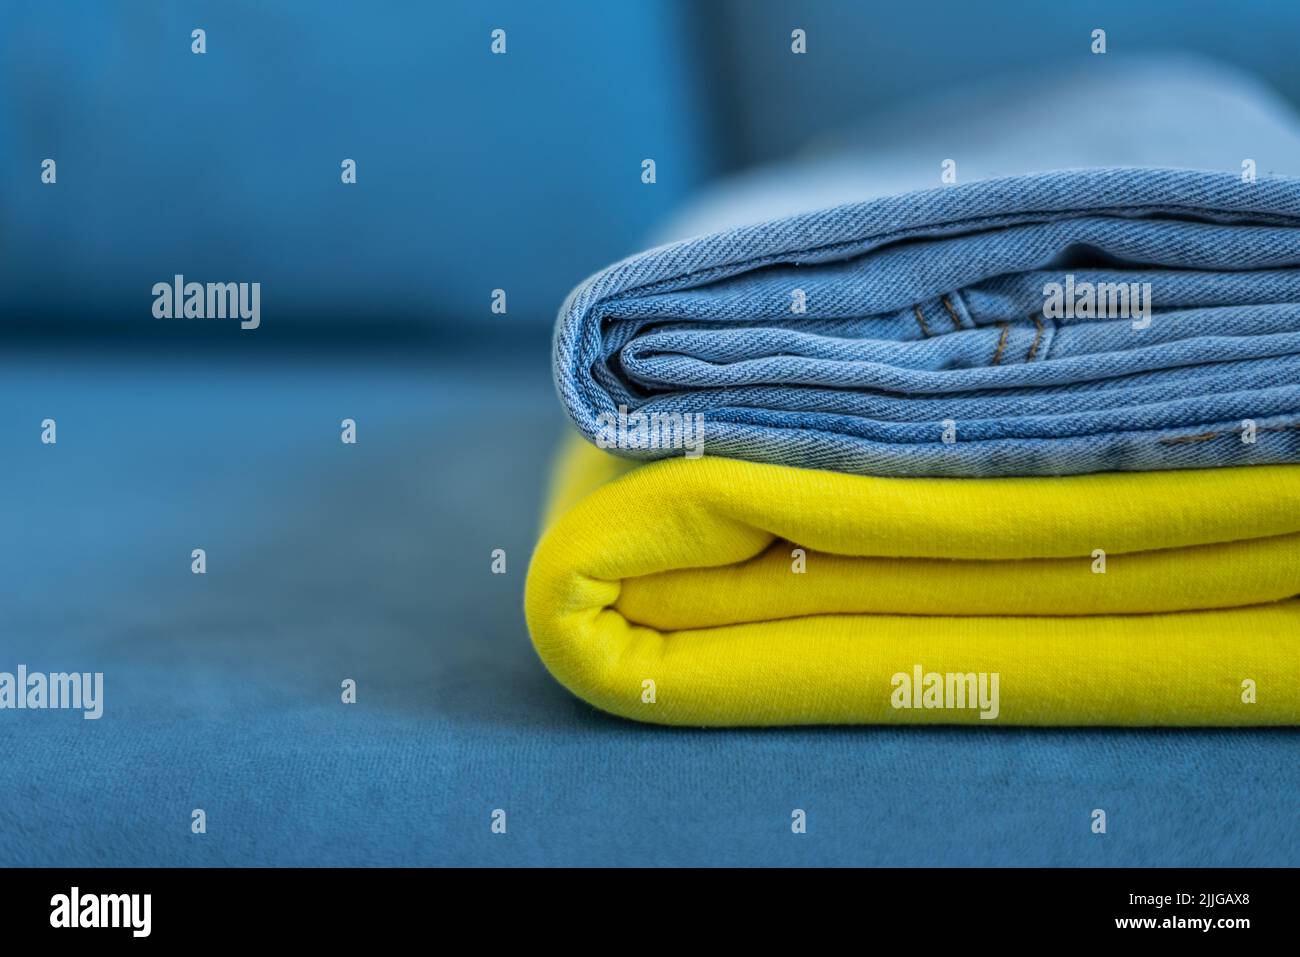 Las ropas de colores brillantes están cuidadosamente apiladas. Los colores amarillo y azul de la bandera ucraniana. Foto de stock